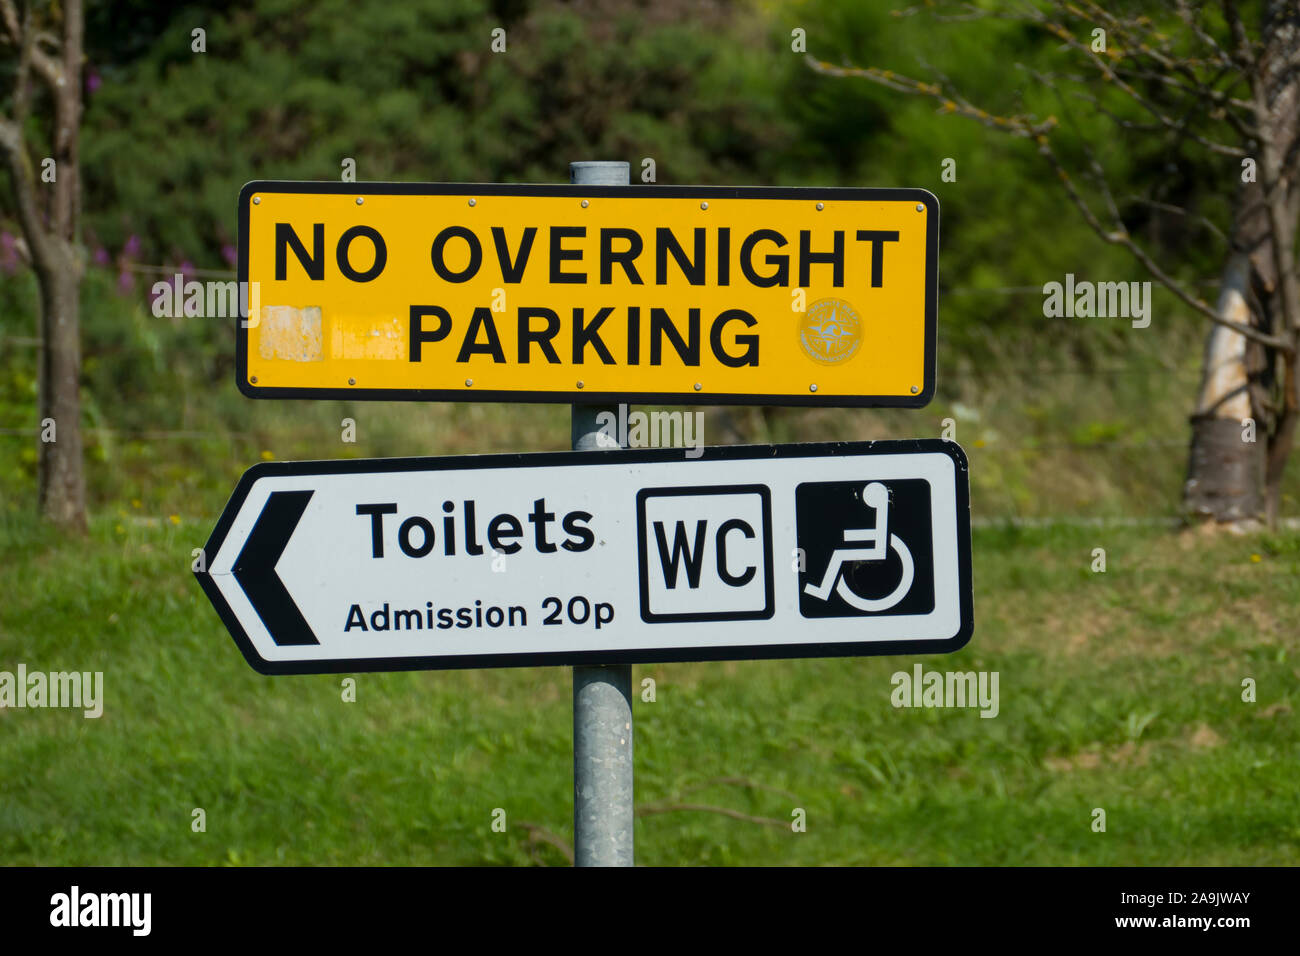 Schild auf einem öffentlichen Parkplatz mit dem englischen testo No parcheggio notturno, bagni, ingresso 20p, WC Foto Stock